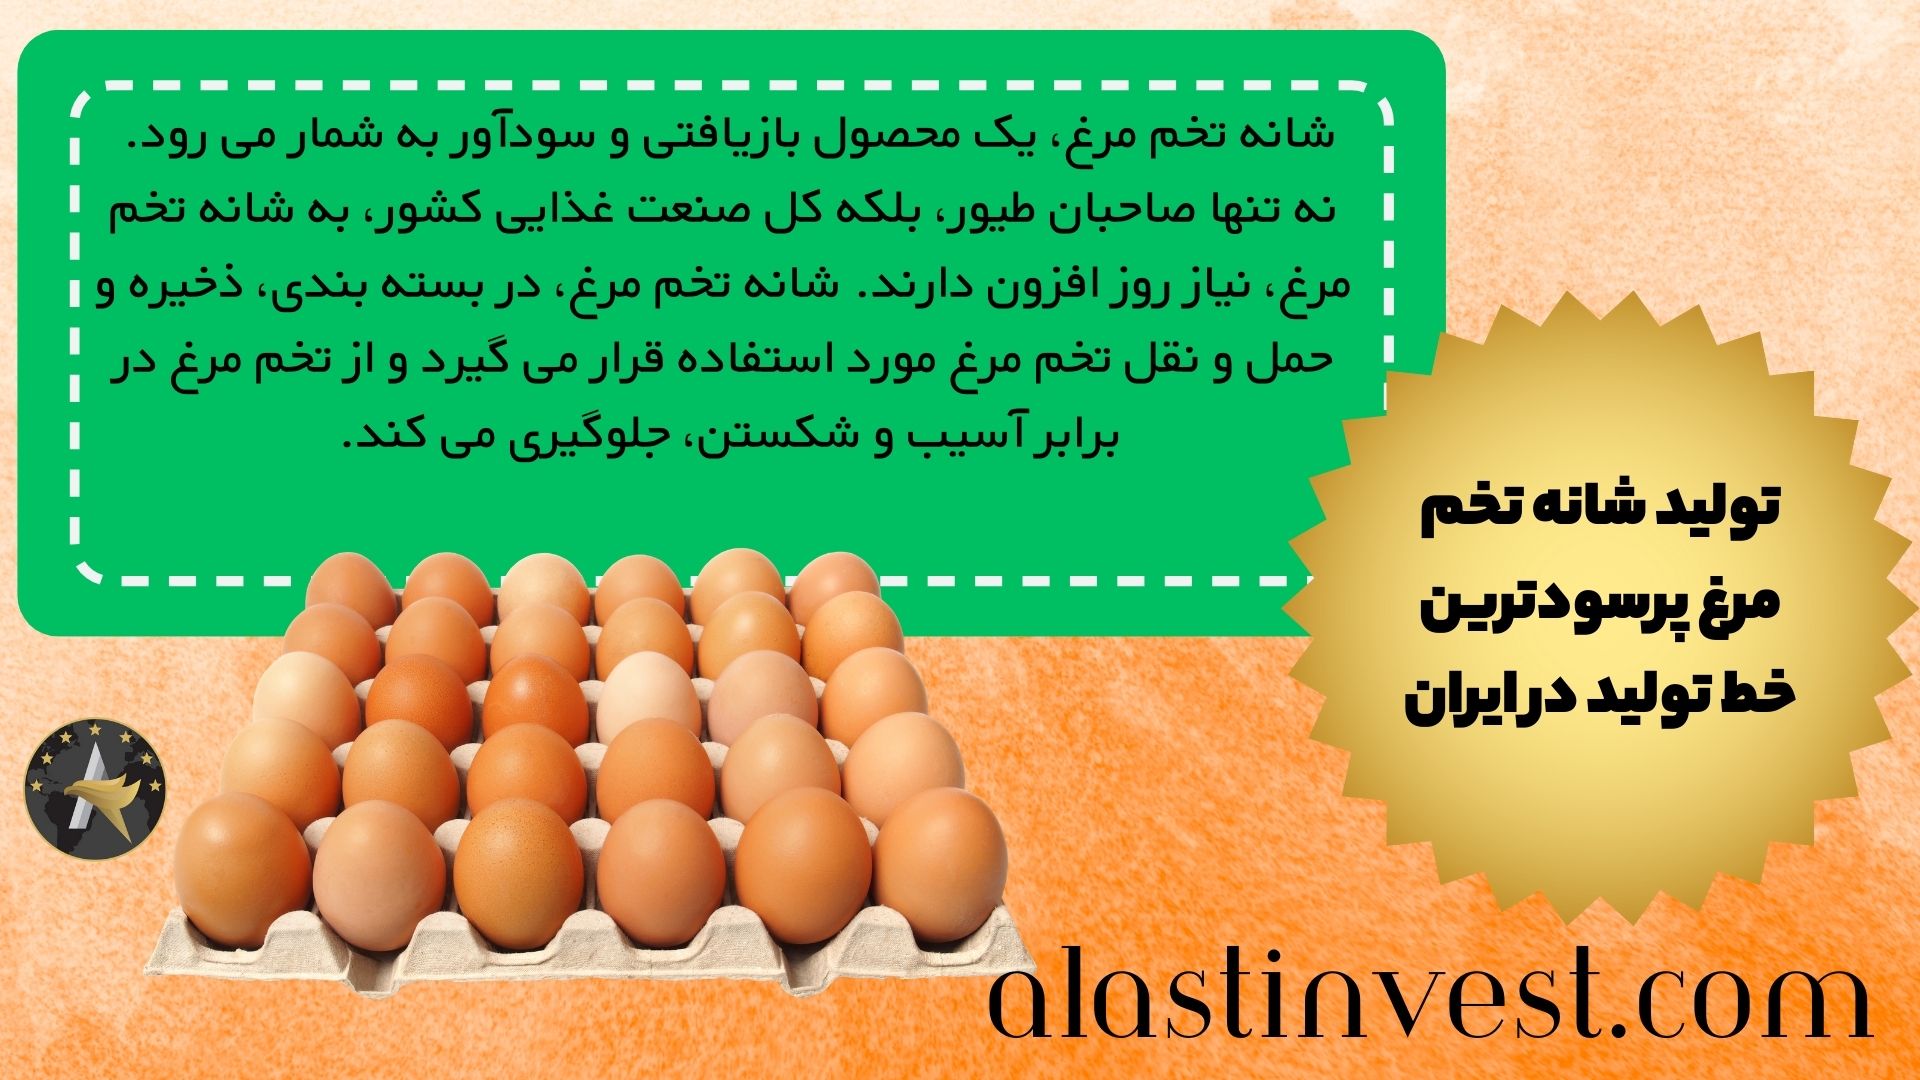 تولید شانه تخم مرغ پرسودترین خط تولید در ایران